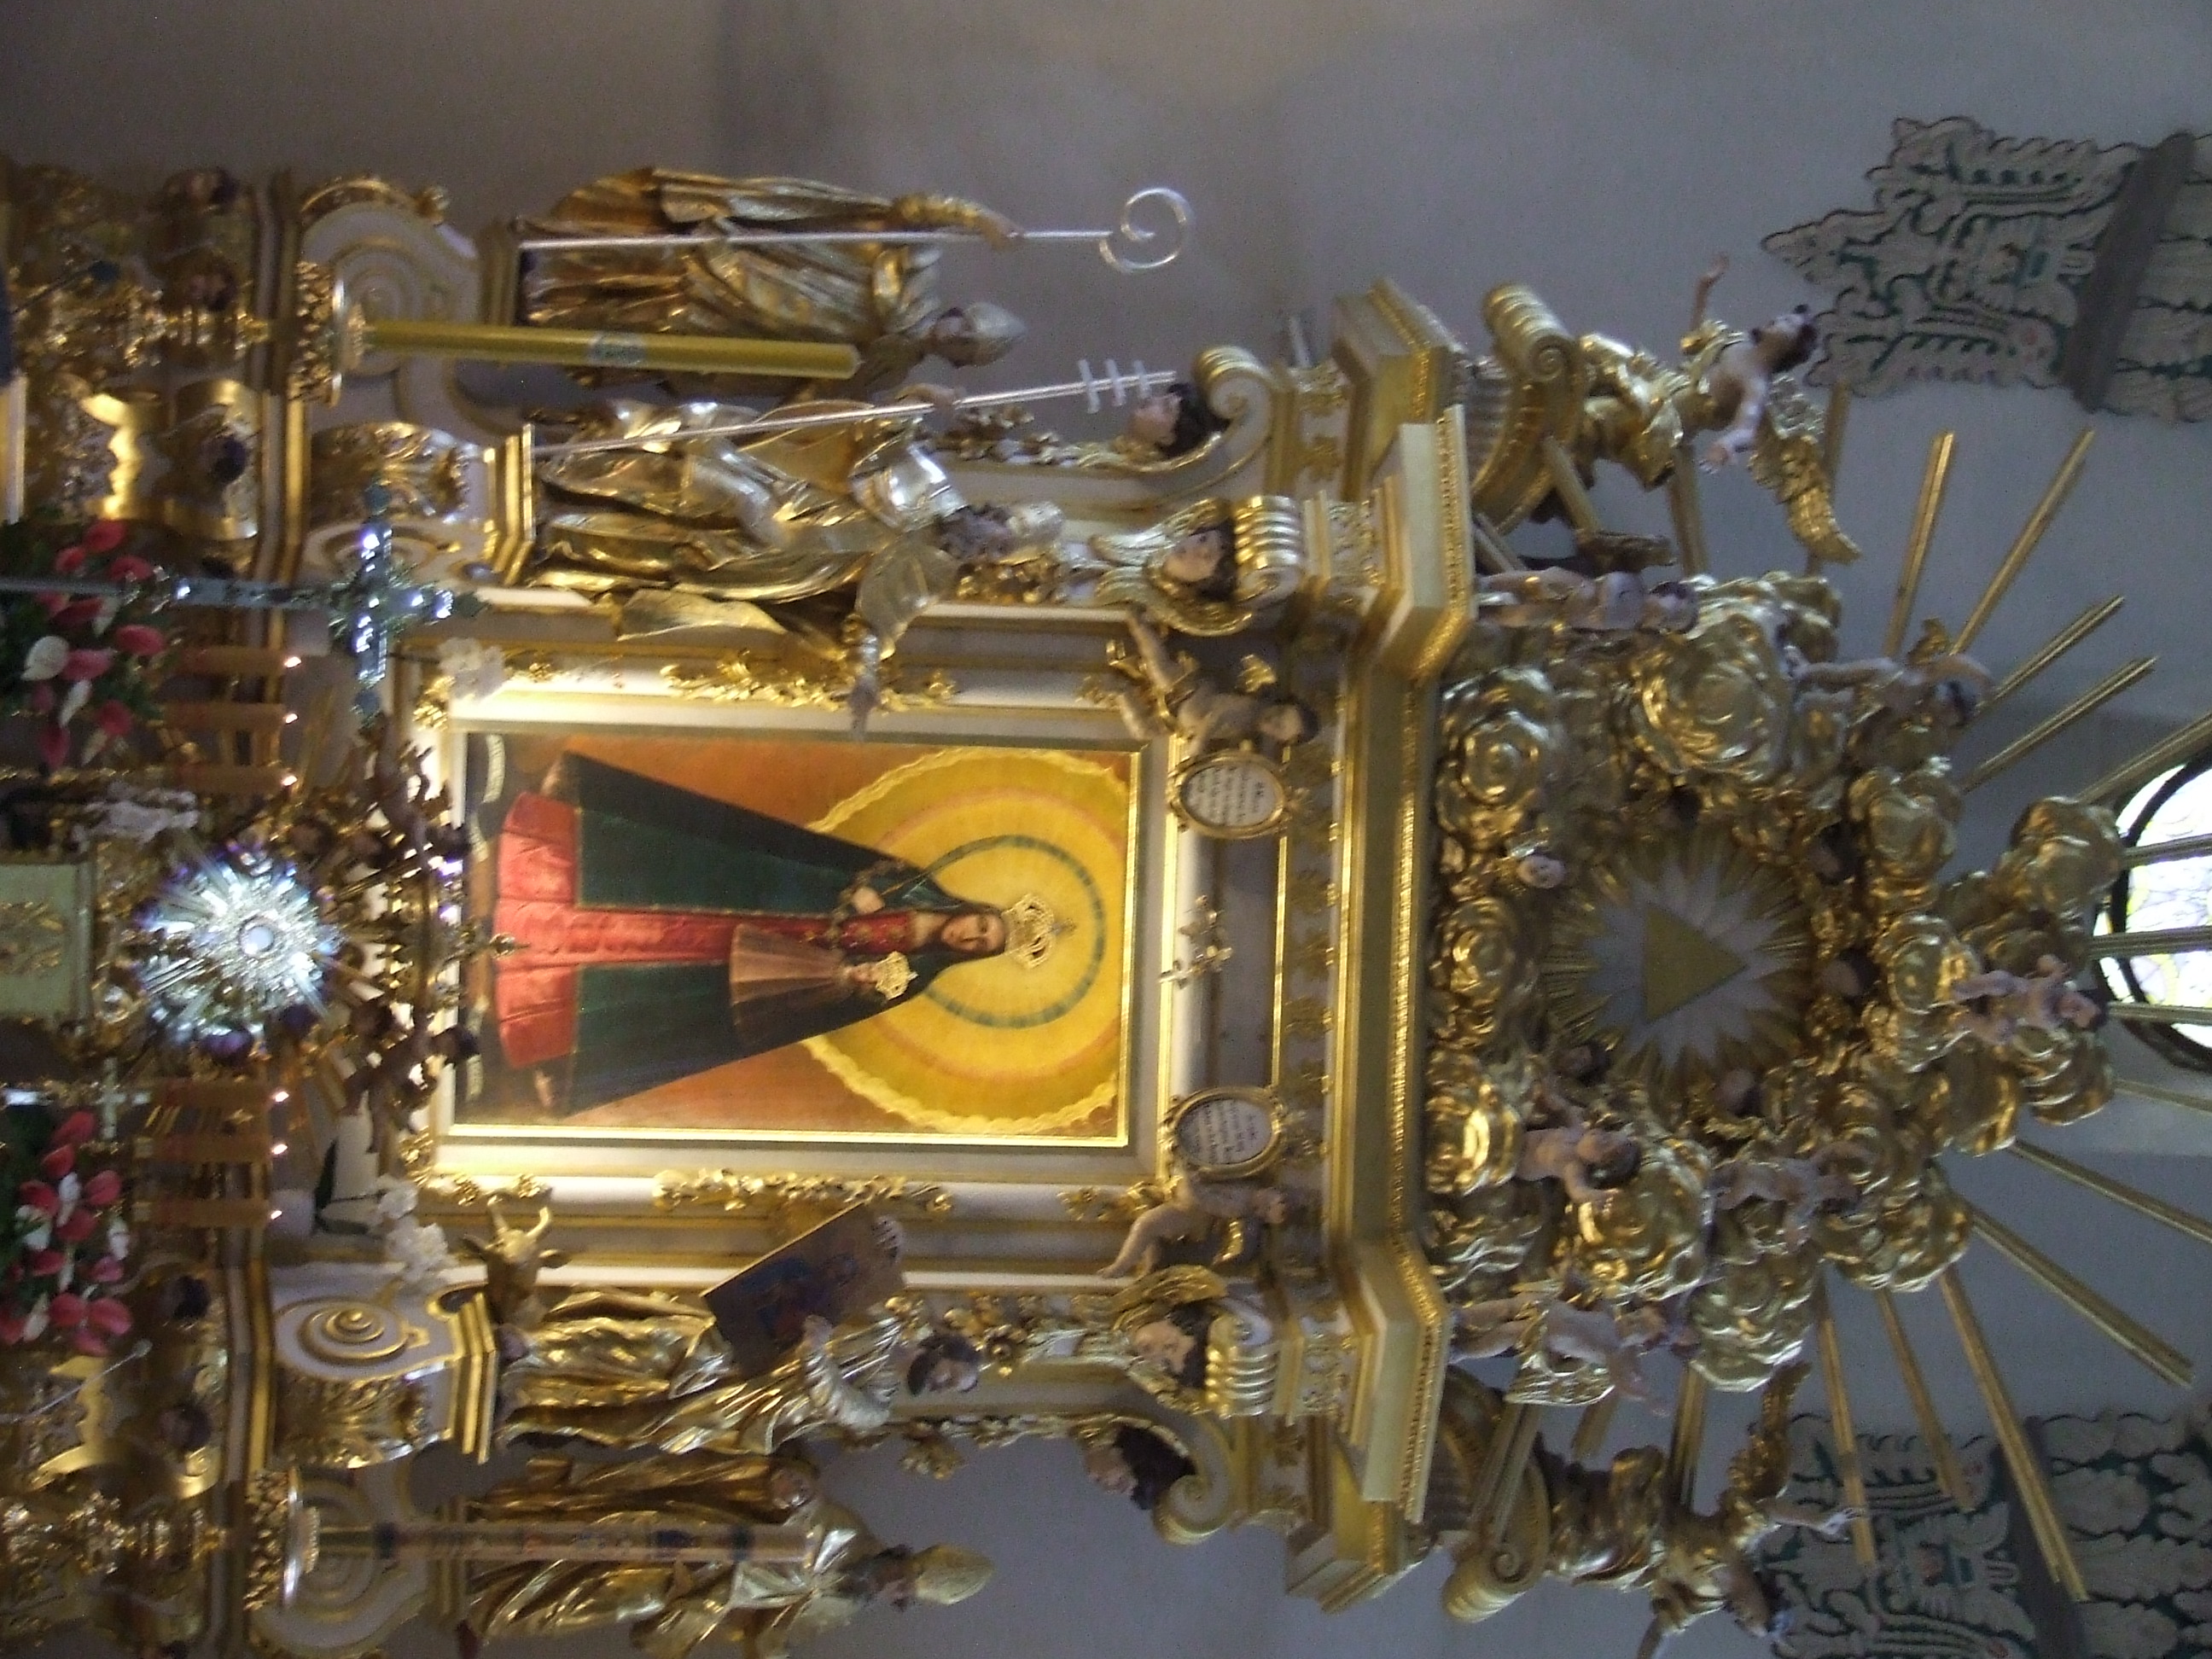 Cudowny obraz Matki Boskiej Kodenskiej w oltarzu kosciola